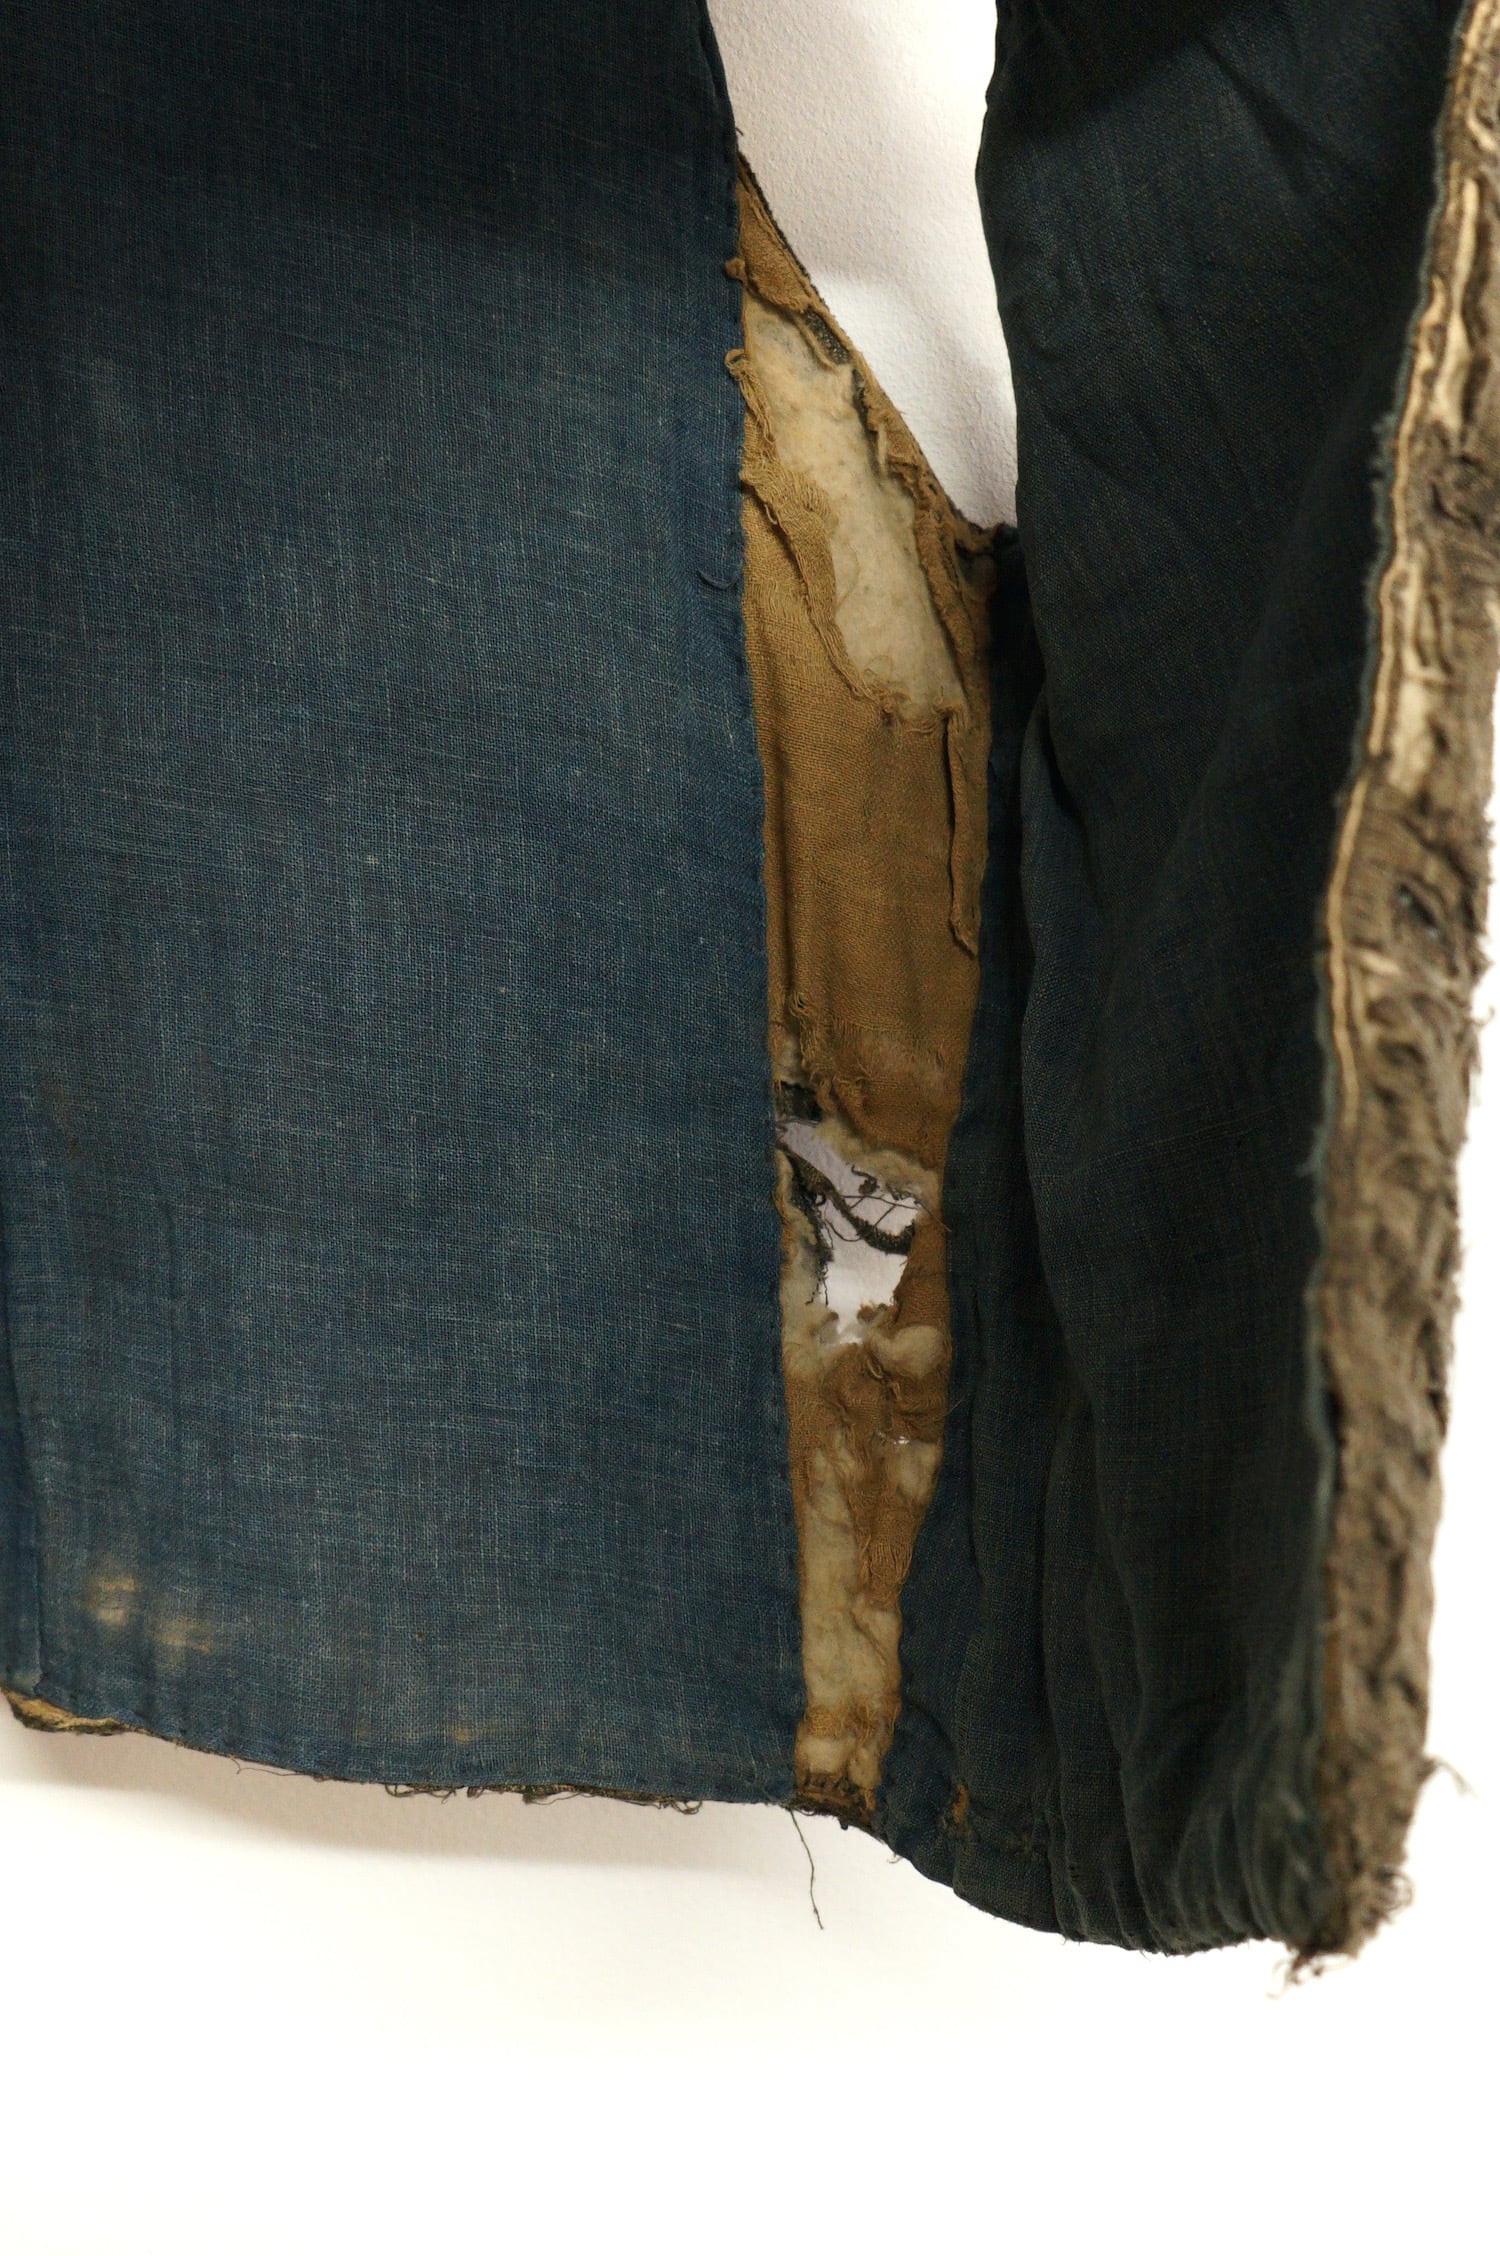 1609 襤褸 ボロ 綿入れ ベスト 袖無し 藍染 木綿 古布 昭和レトロ